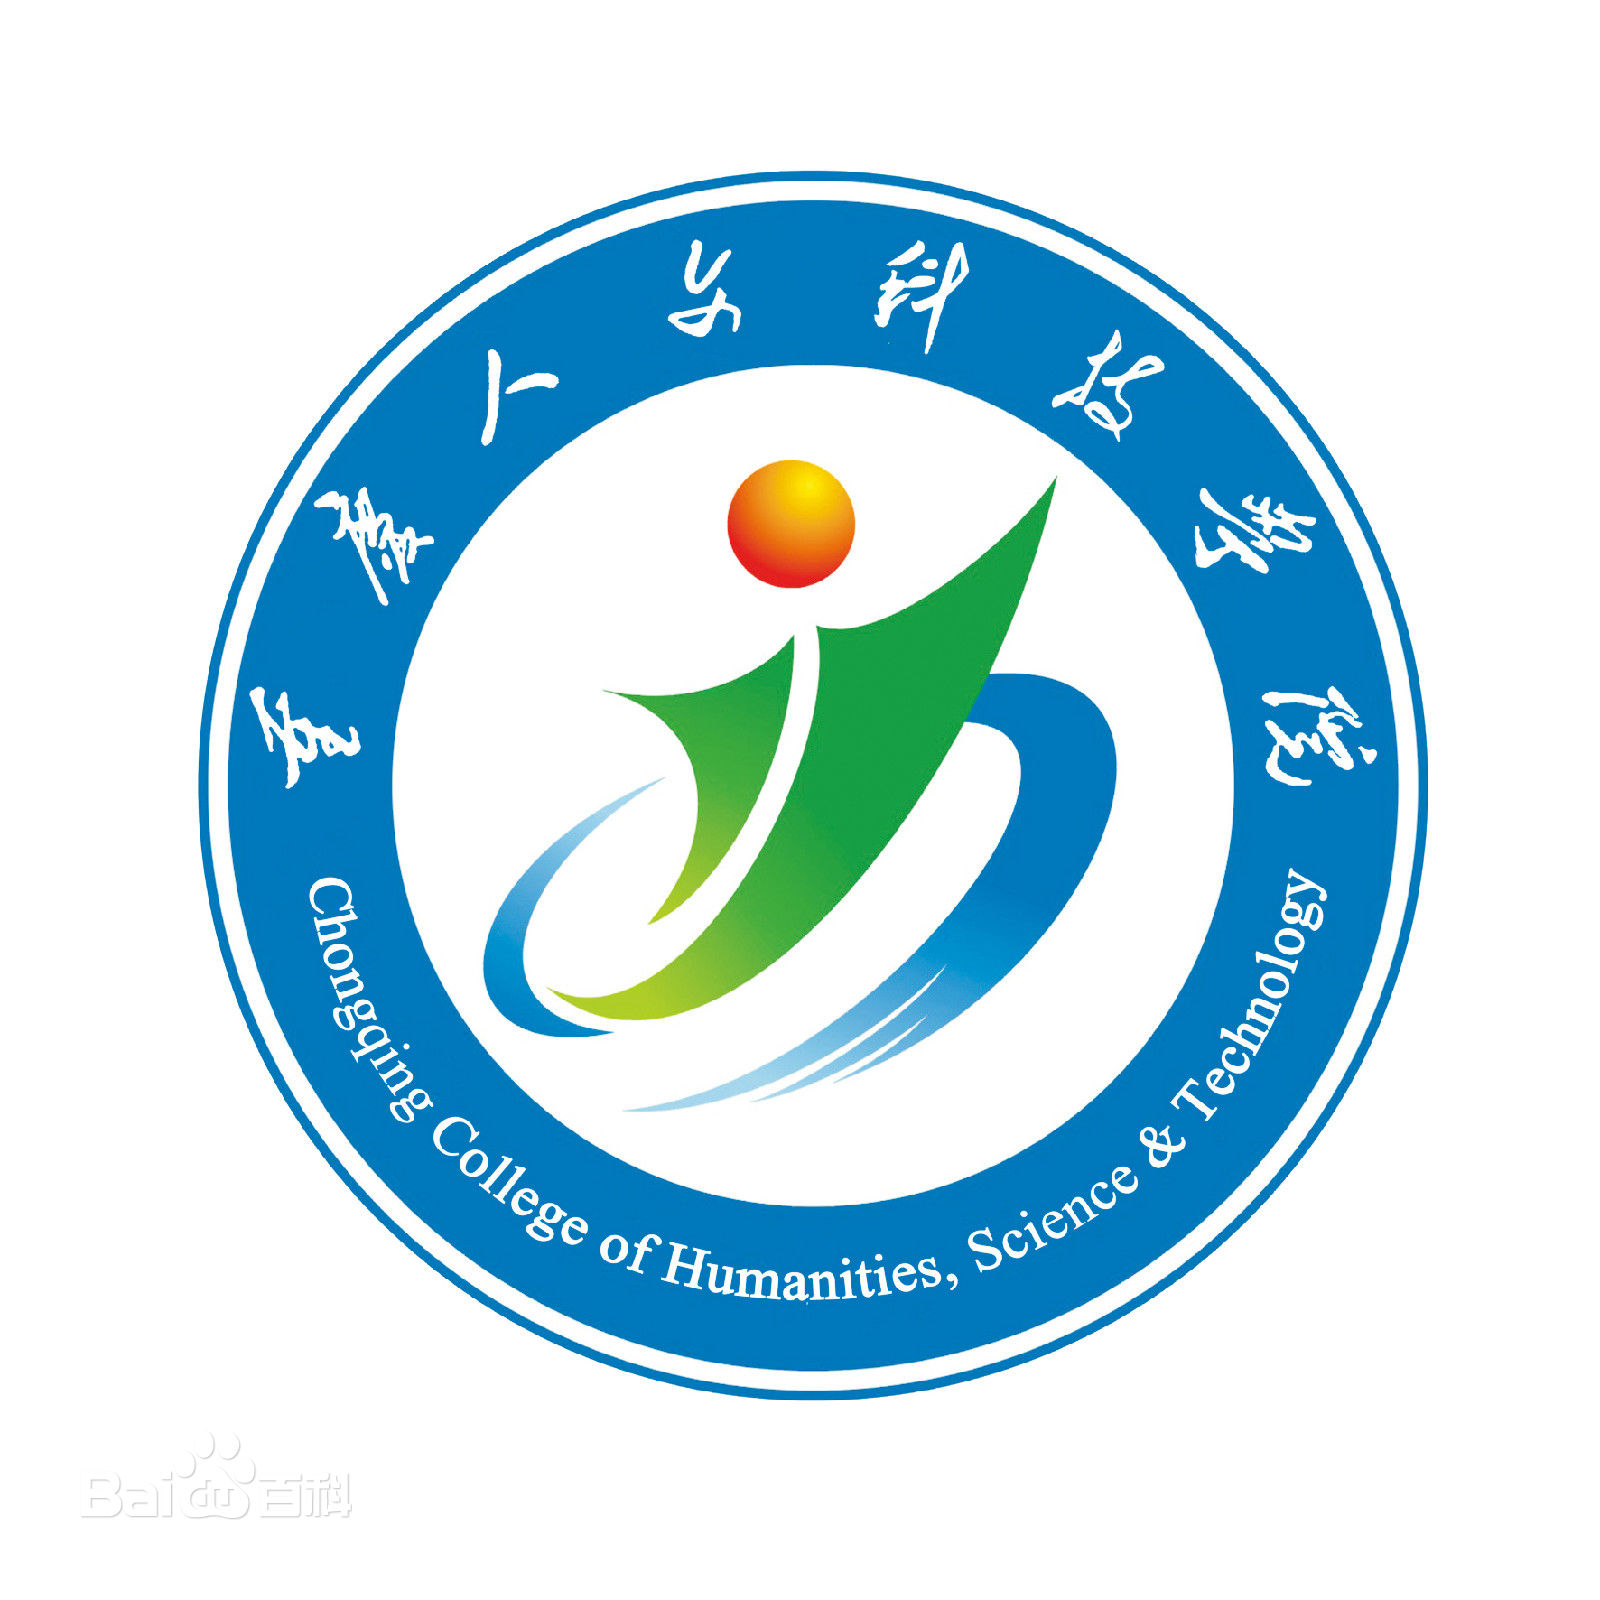 2020年重庆人文科技学院招生章程发布